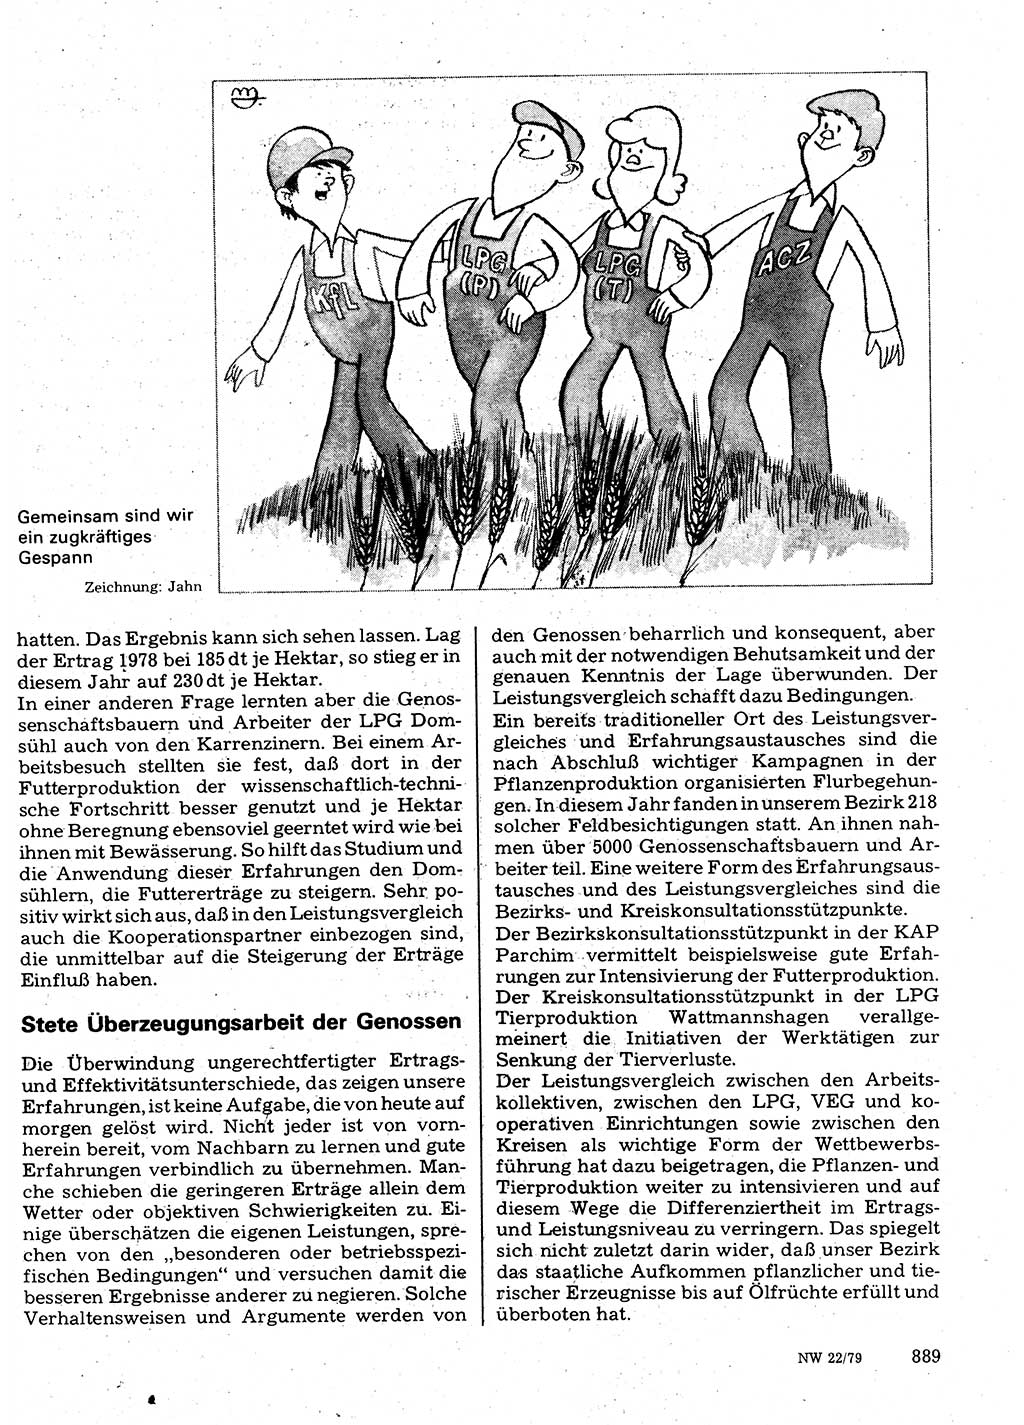 Neuer Weg (NW), Organ des Zentralkomitees (ZK) der SED (Sozialistische Einheitspartei Deutschlands) für Fragen des Parteilebens, 34. Jahrgang [Deutsche Demokratische Republik (DDR)] 1979, Seite 889 (NW ZK SED DDR 1979, S. 889)